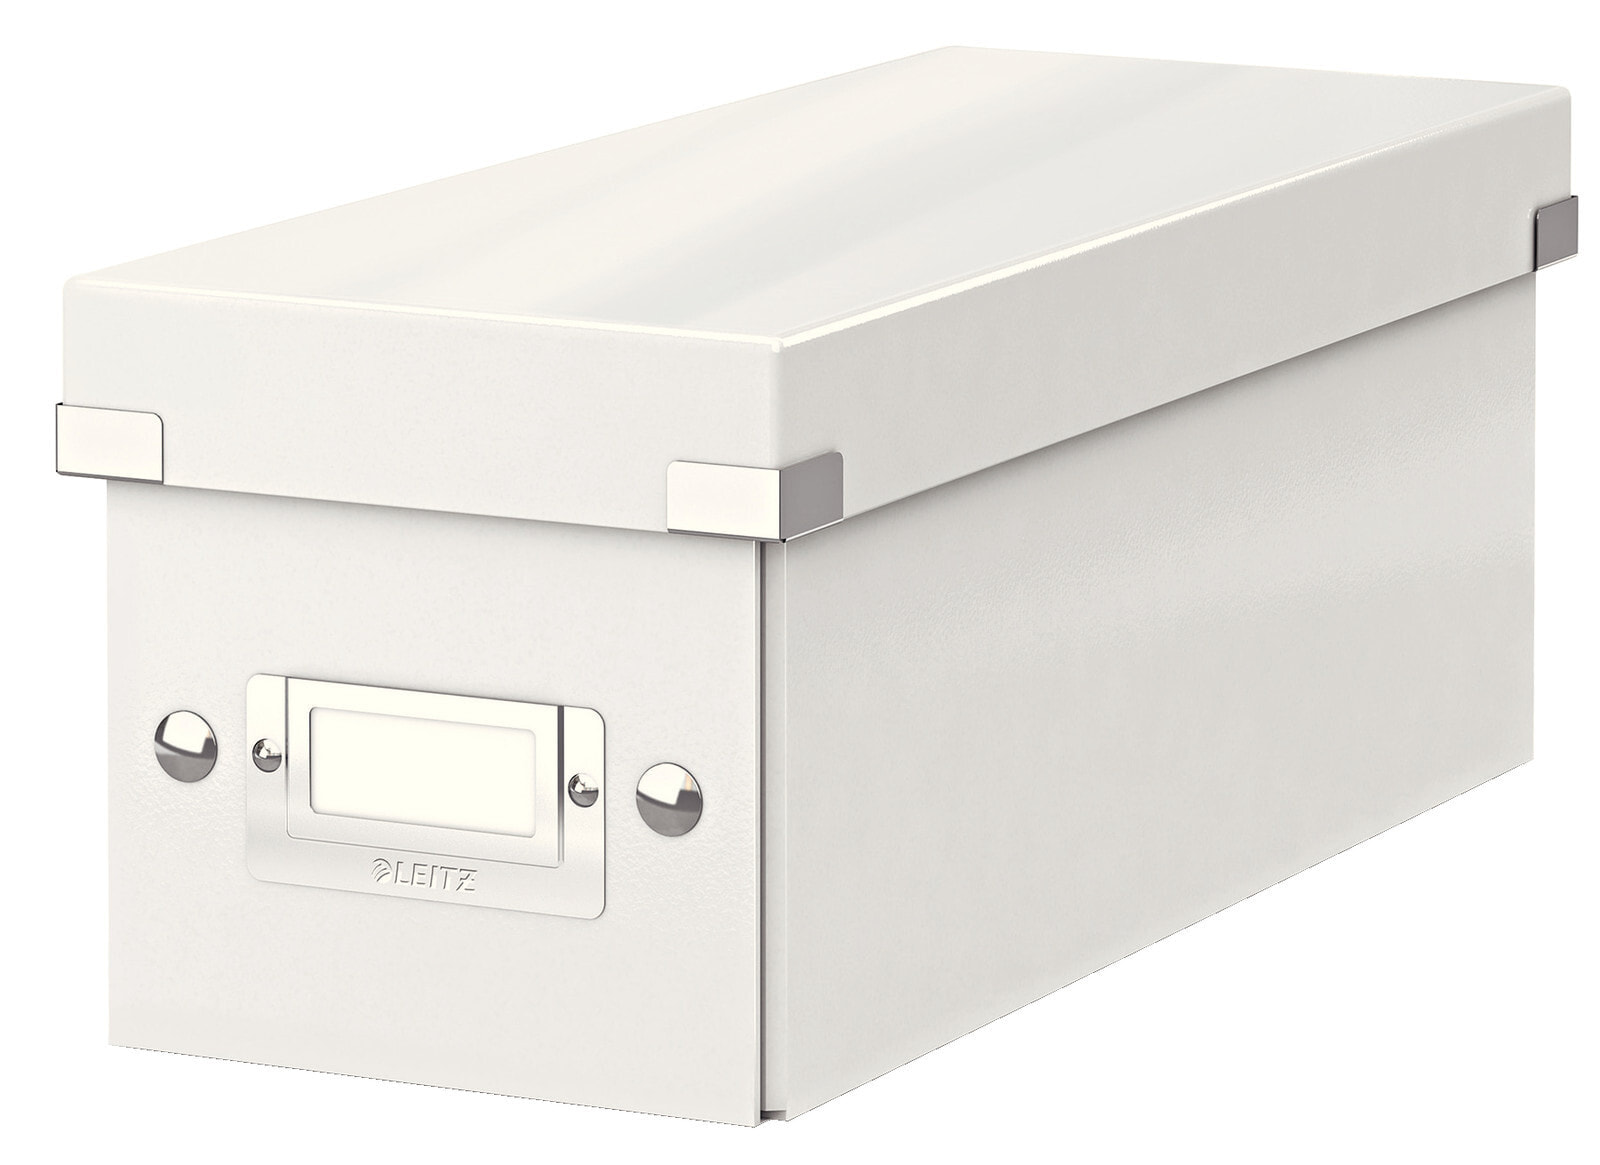 Leitz 60410001 коробка для хранения оптических дисков 160 диск (ов) Белый ДВП